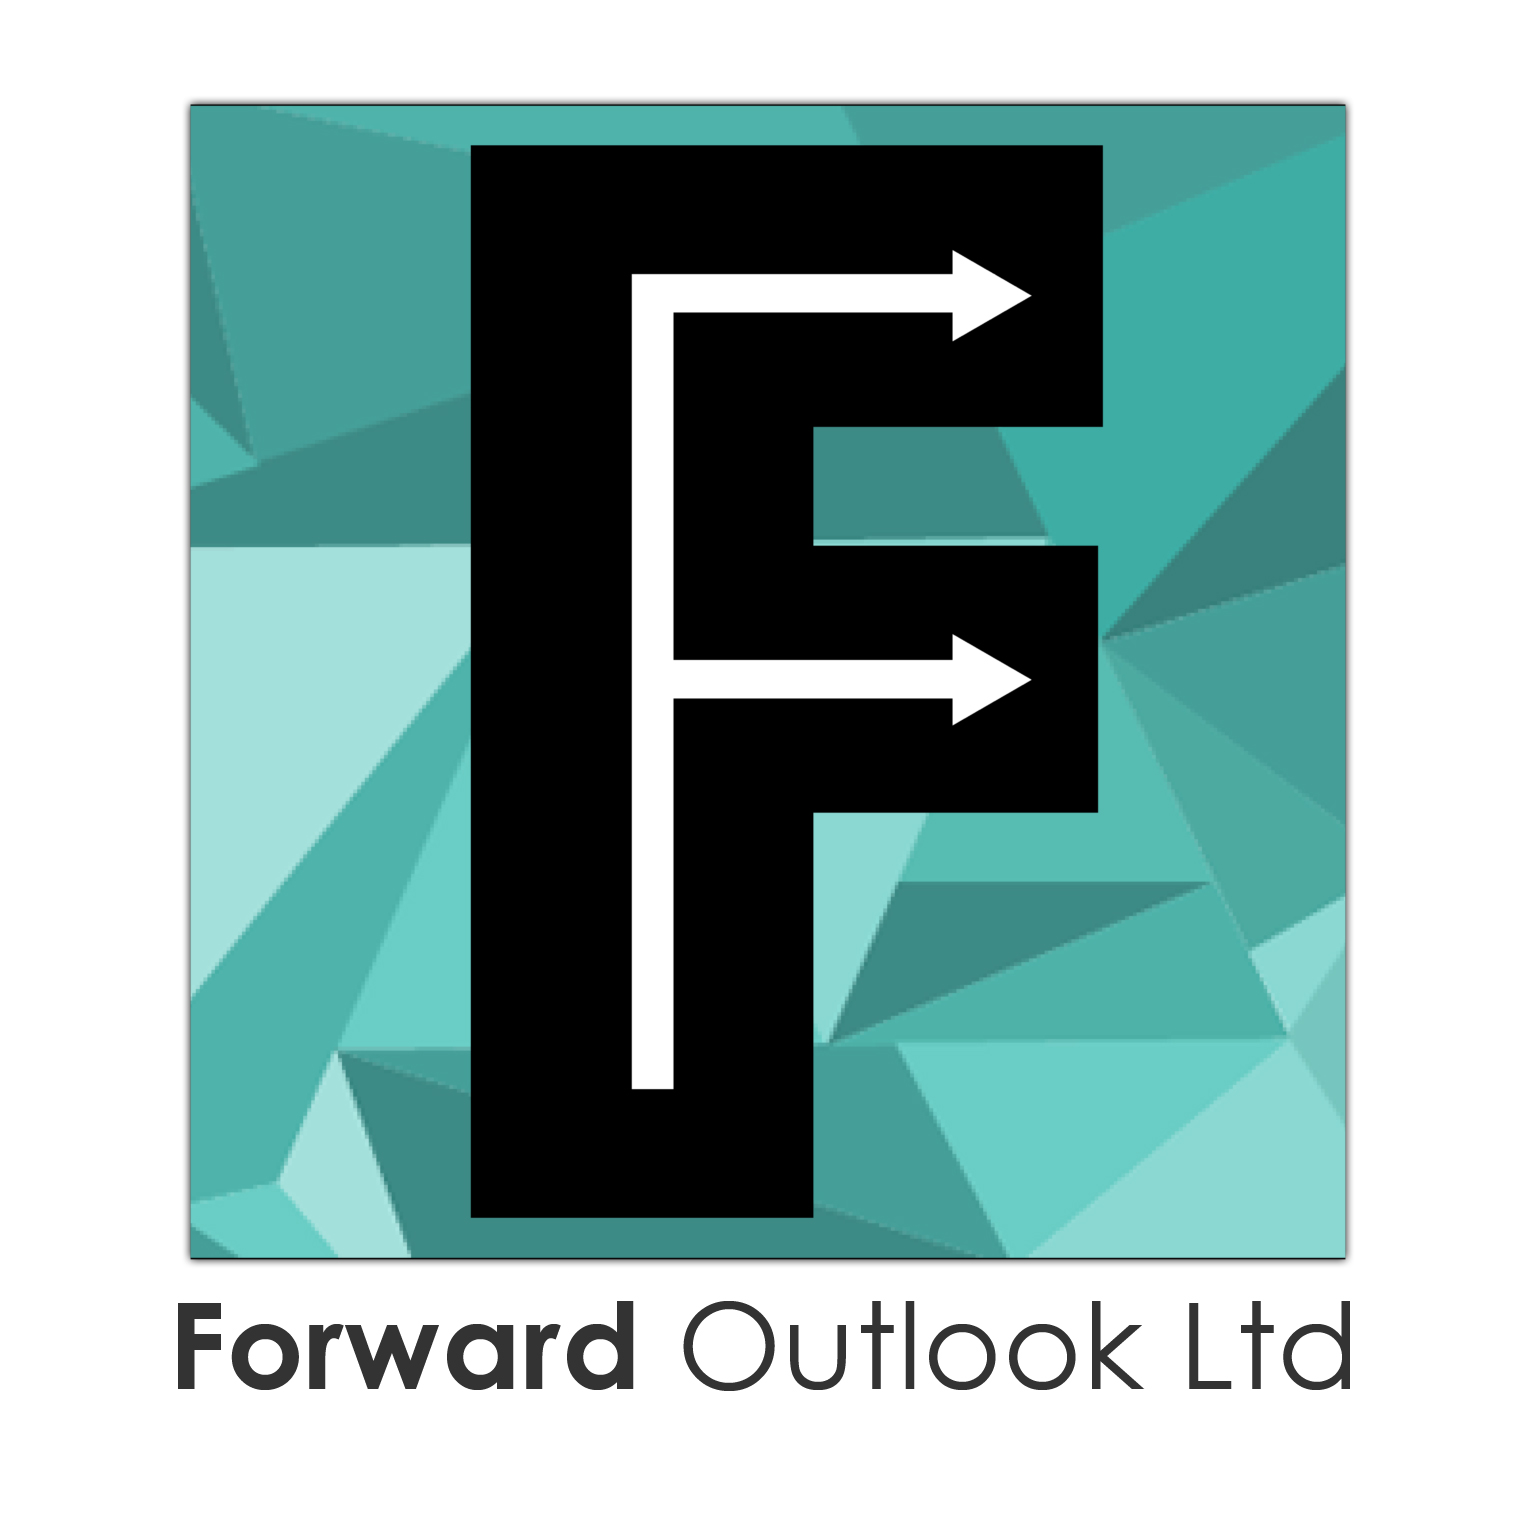 Forward Outlook Ltd